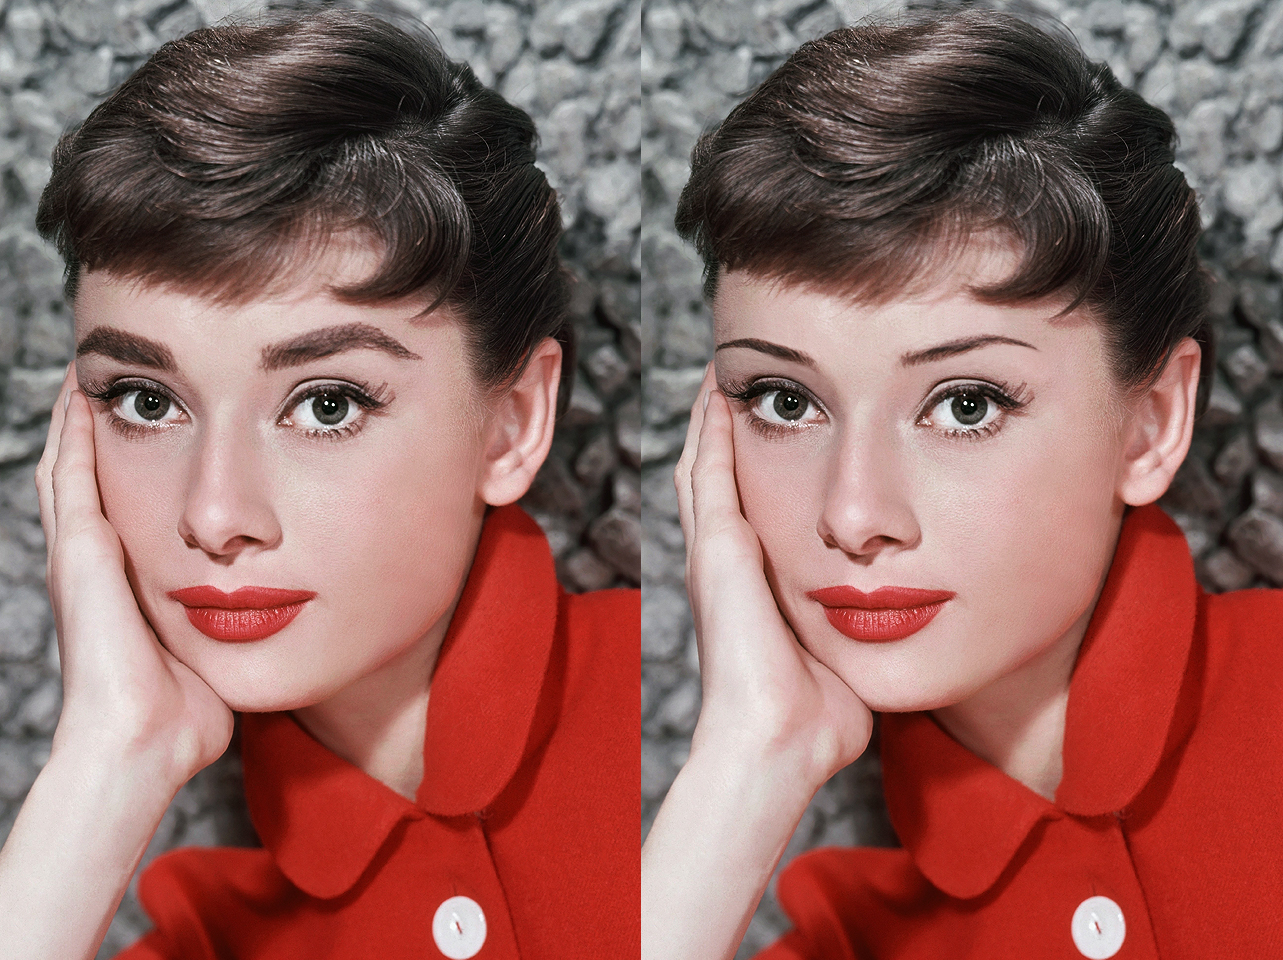 Las emblemáticas cejas de Audrey Hepburn de los años 50 frente a un look de cejas finas editado digitalmente | Fuente: Getty Images